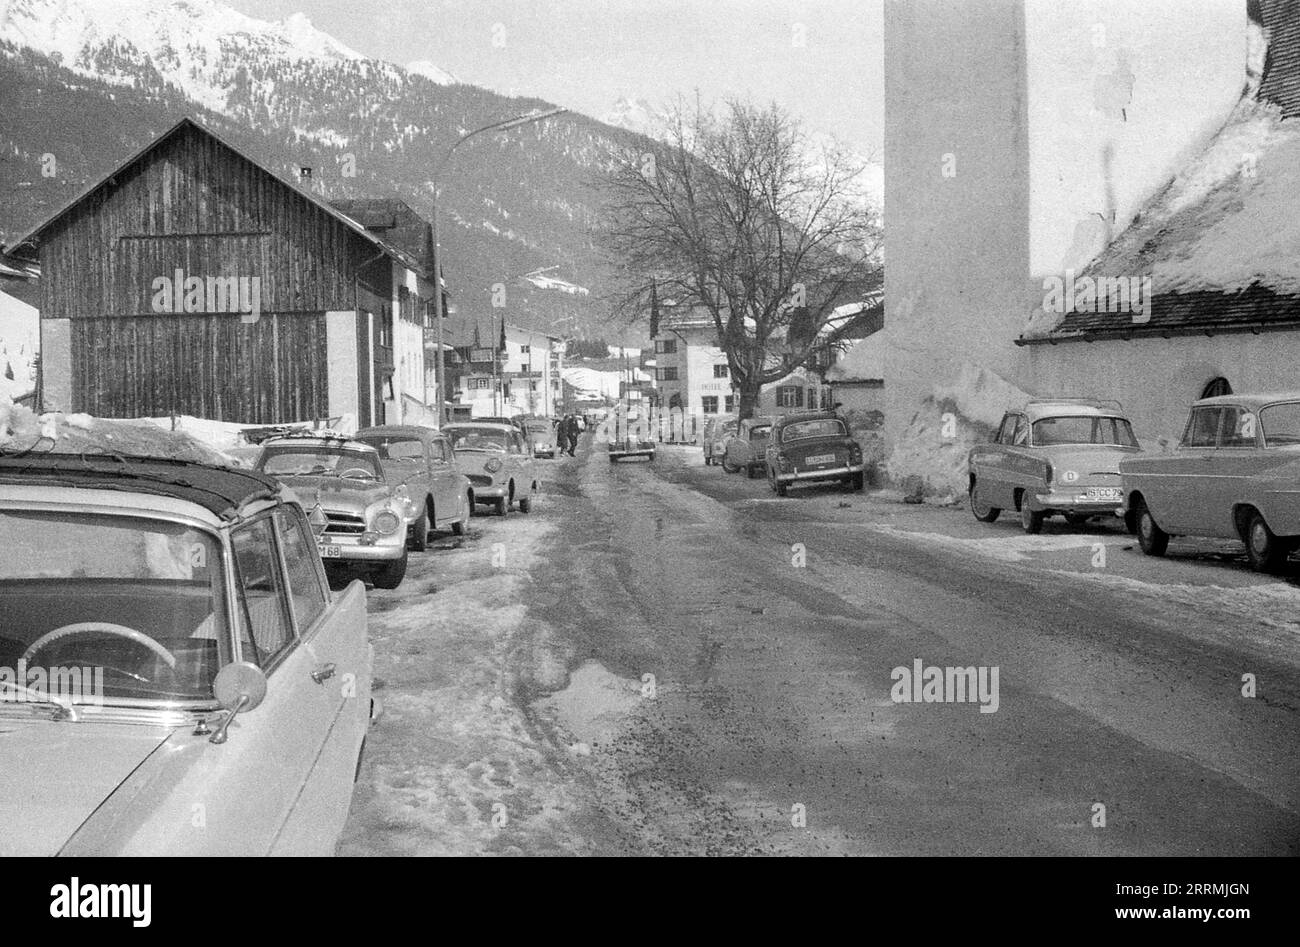 Tirol, Österreich. c.1960 – Blick auf die Dorfstraße im Dorf St. Anton am Arlberg. Auf der rechten Seite befindet sich St. Anthony von Padua Kirche. Die Autos werden auf beiden Seiten der Straße geparkt, die sich in einem schlampigen Zustand befindet. Hotels und die schneebedeckten Berge der Ostalpen sind in der Ferne sichtbar. Stockfoto